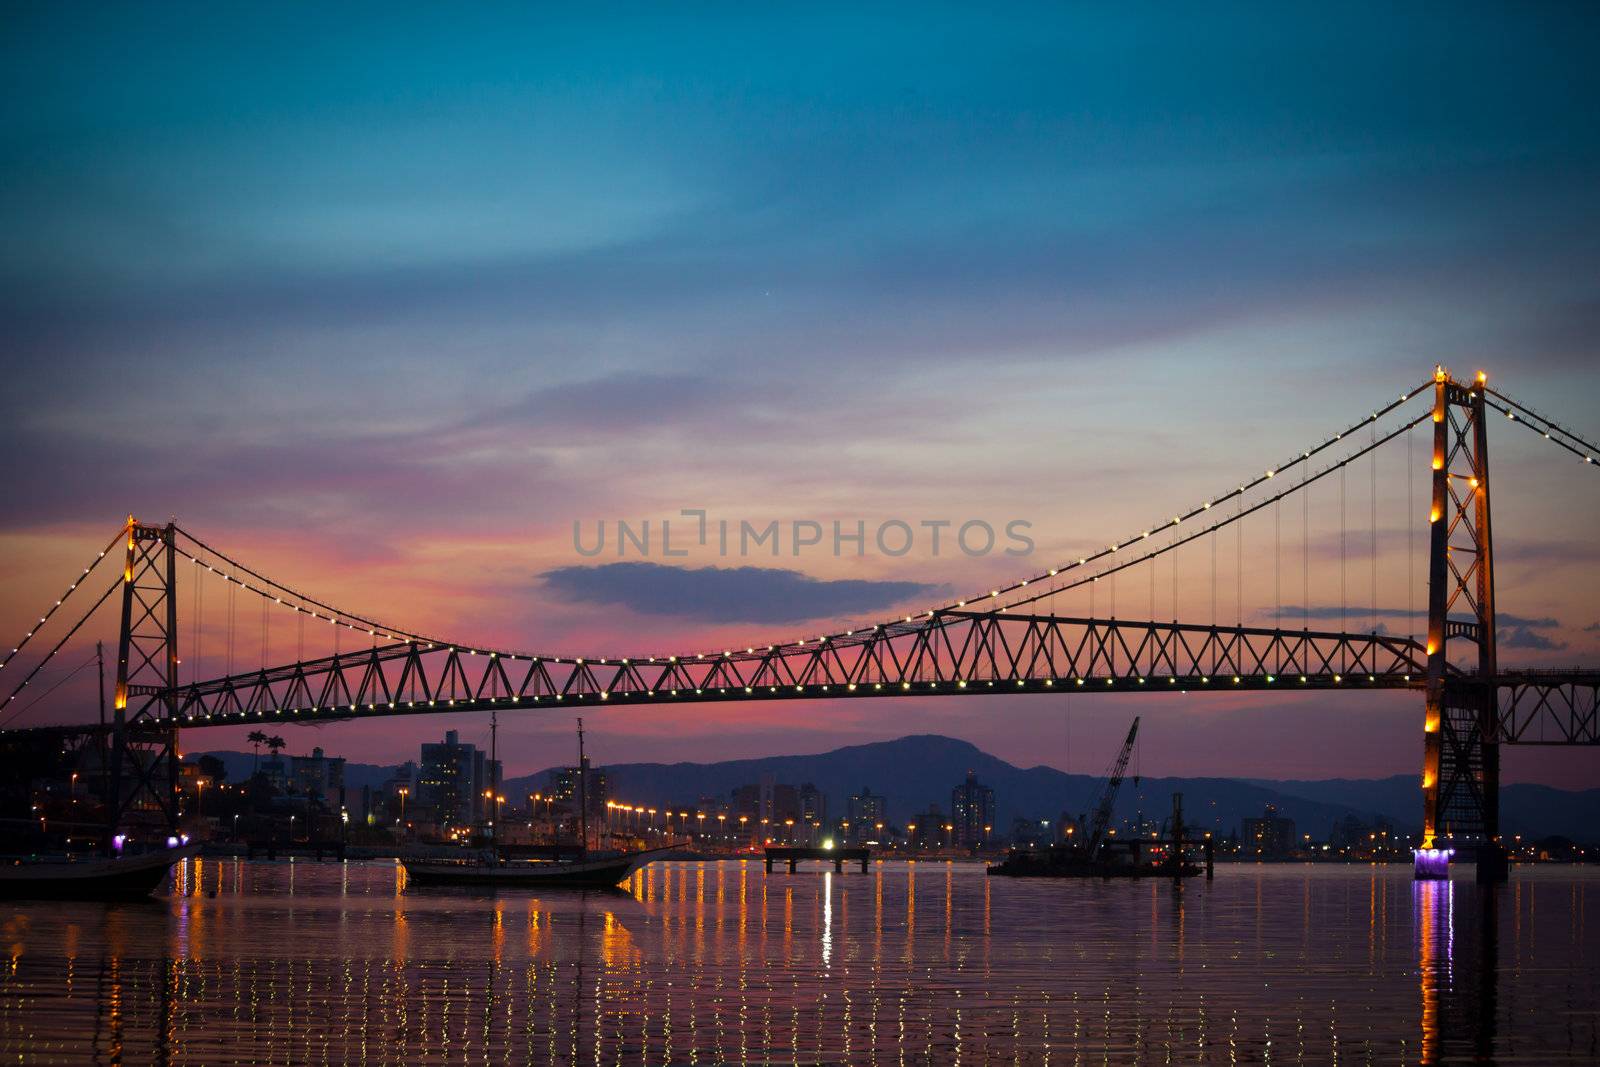 Bridge at Sunset by Daniel_Wiedemann